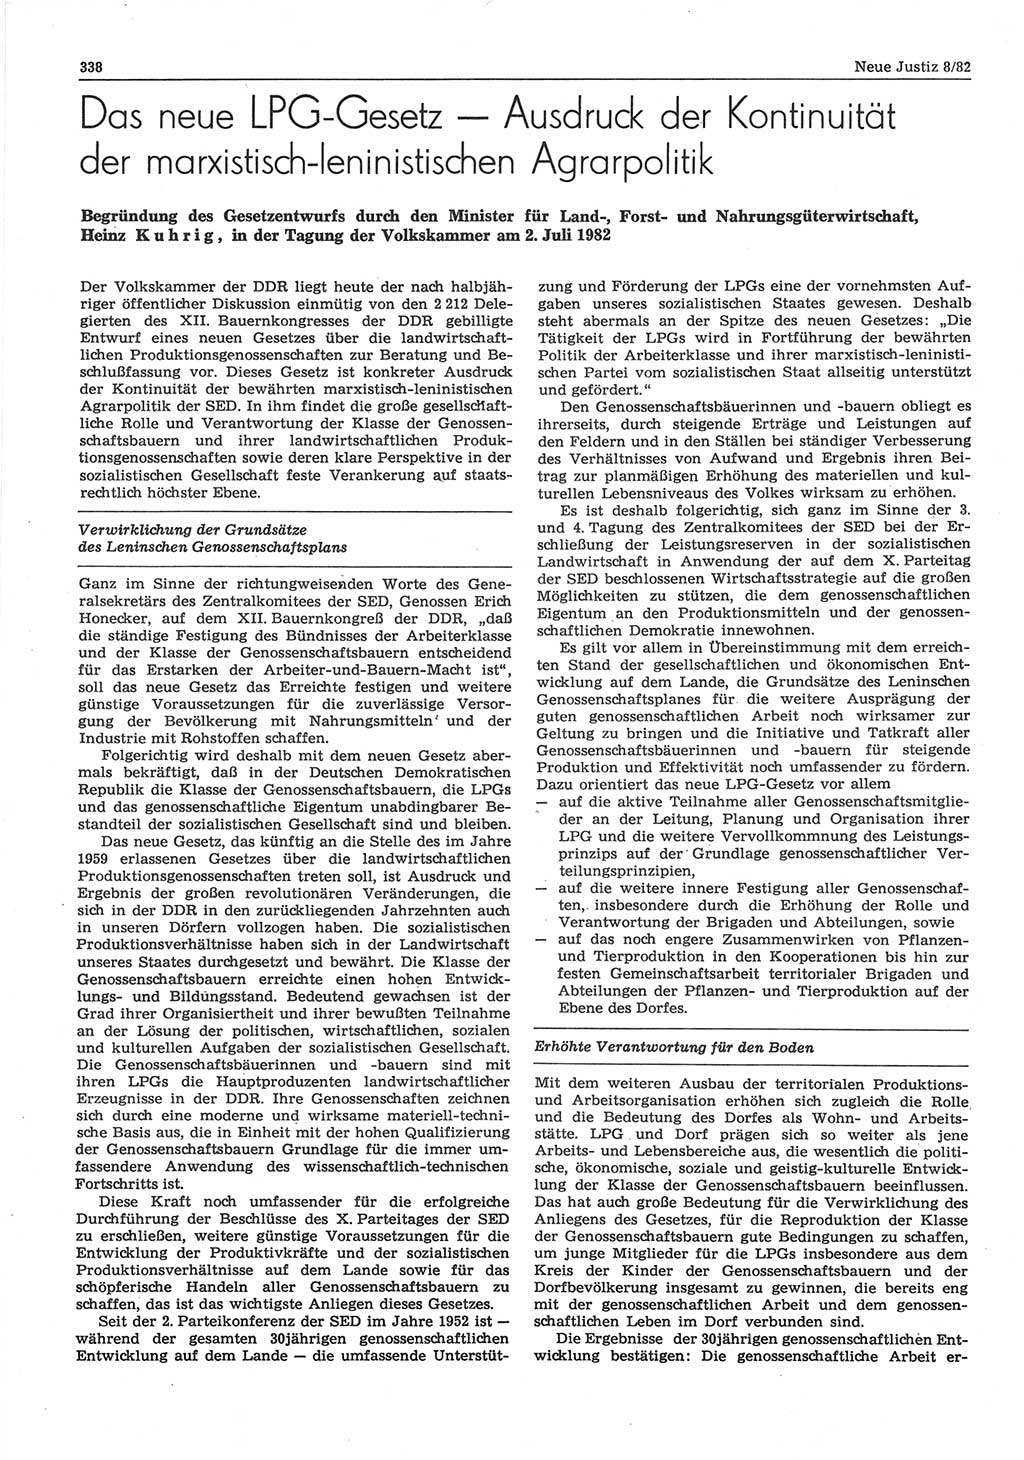 Neue Justiz (NJ), Zeitschrift für sozialistisches Recht und Gesetzlichkeit [Deutsche Demokratische Republik (DDR)], 36. Jahrgang 1982, Seite 338 (NJ DDR 1982, S. 338)